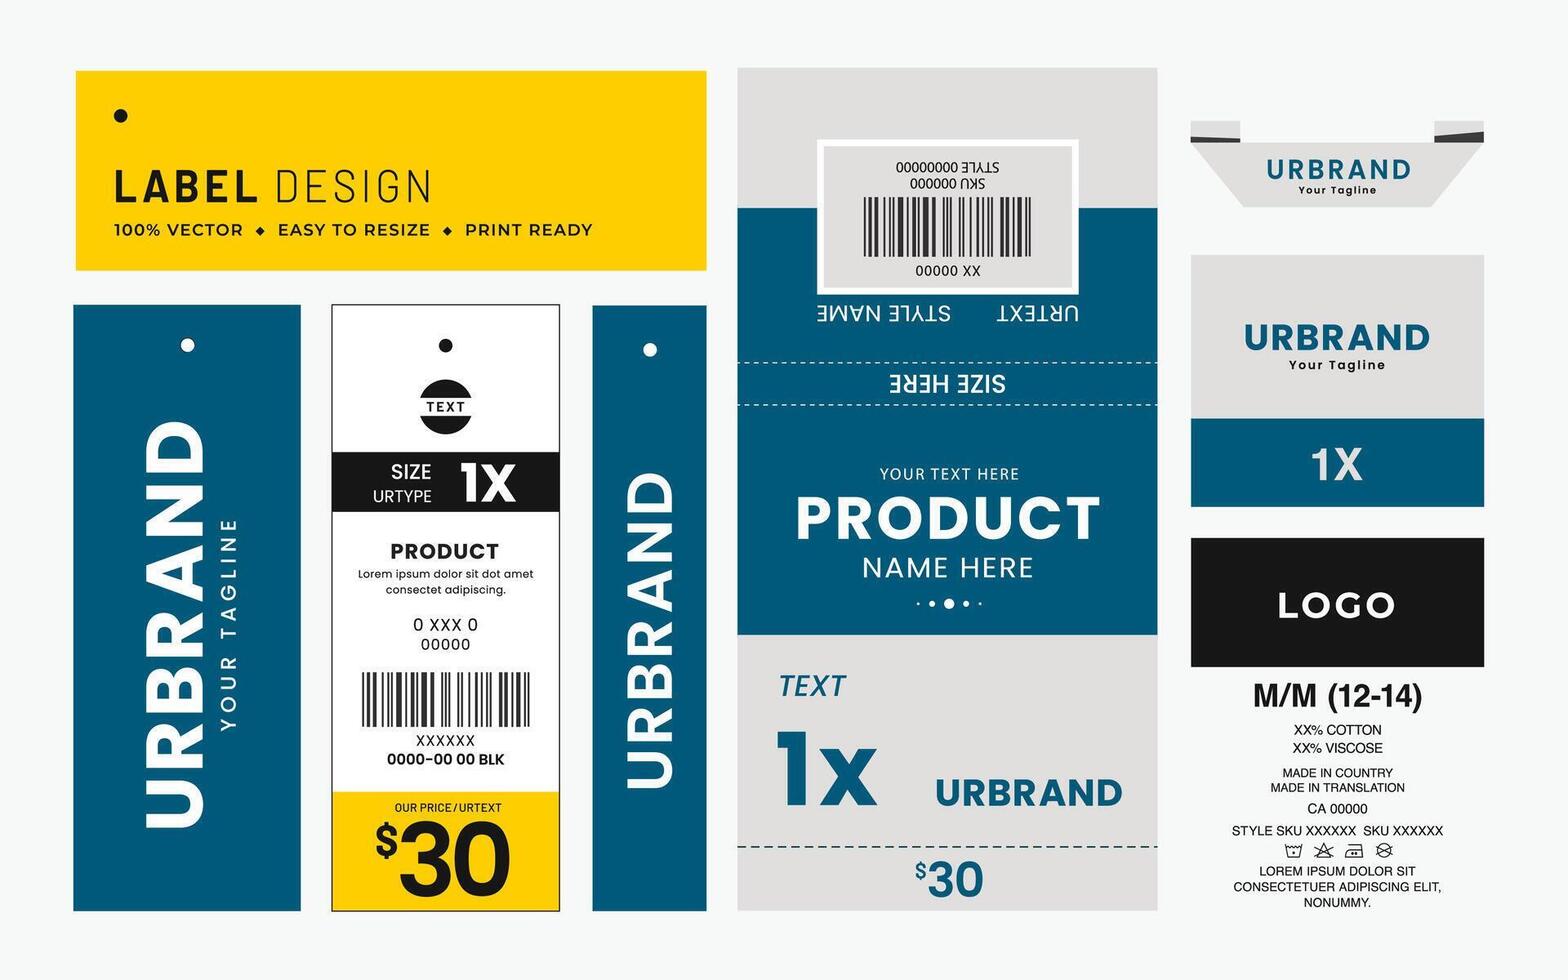 hänga märka märka och pris märka kläder vård märka design innovation plagg Tillbehör hållbarhet förpackning design och årgång mode produkt. vektor